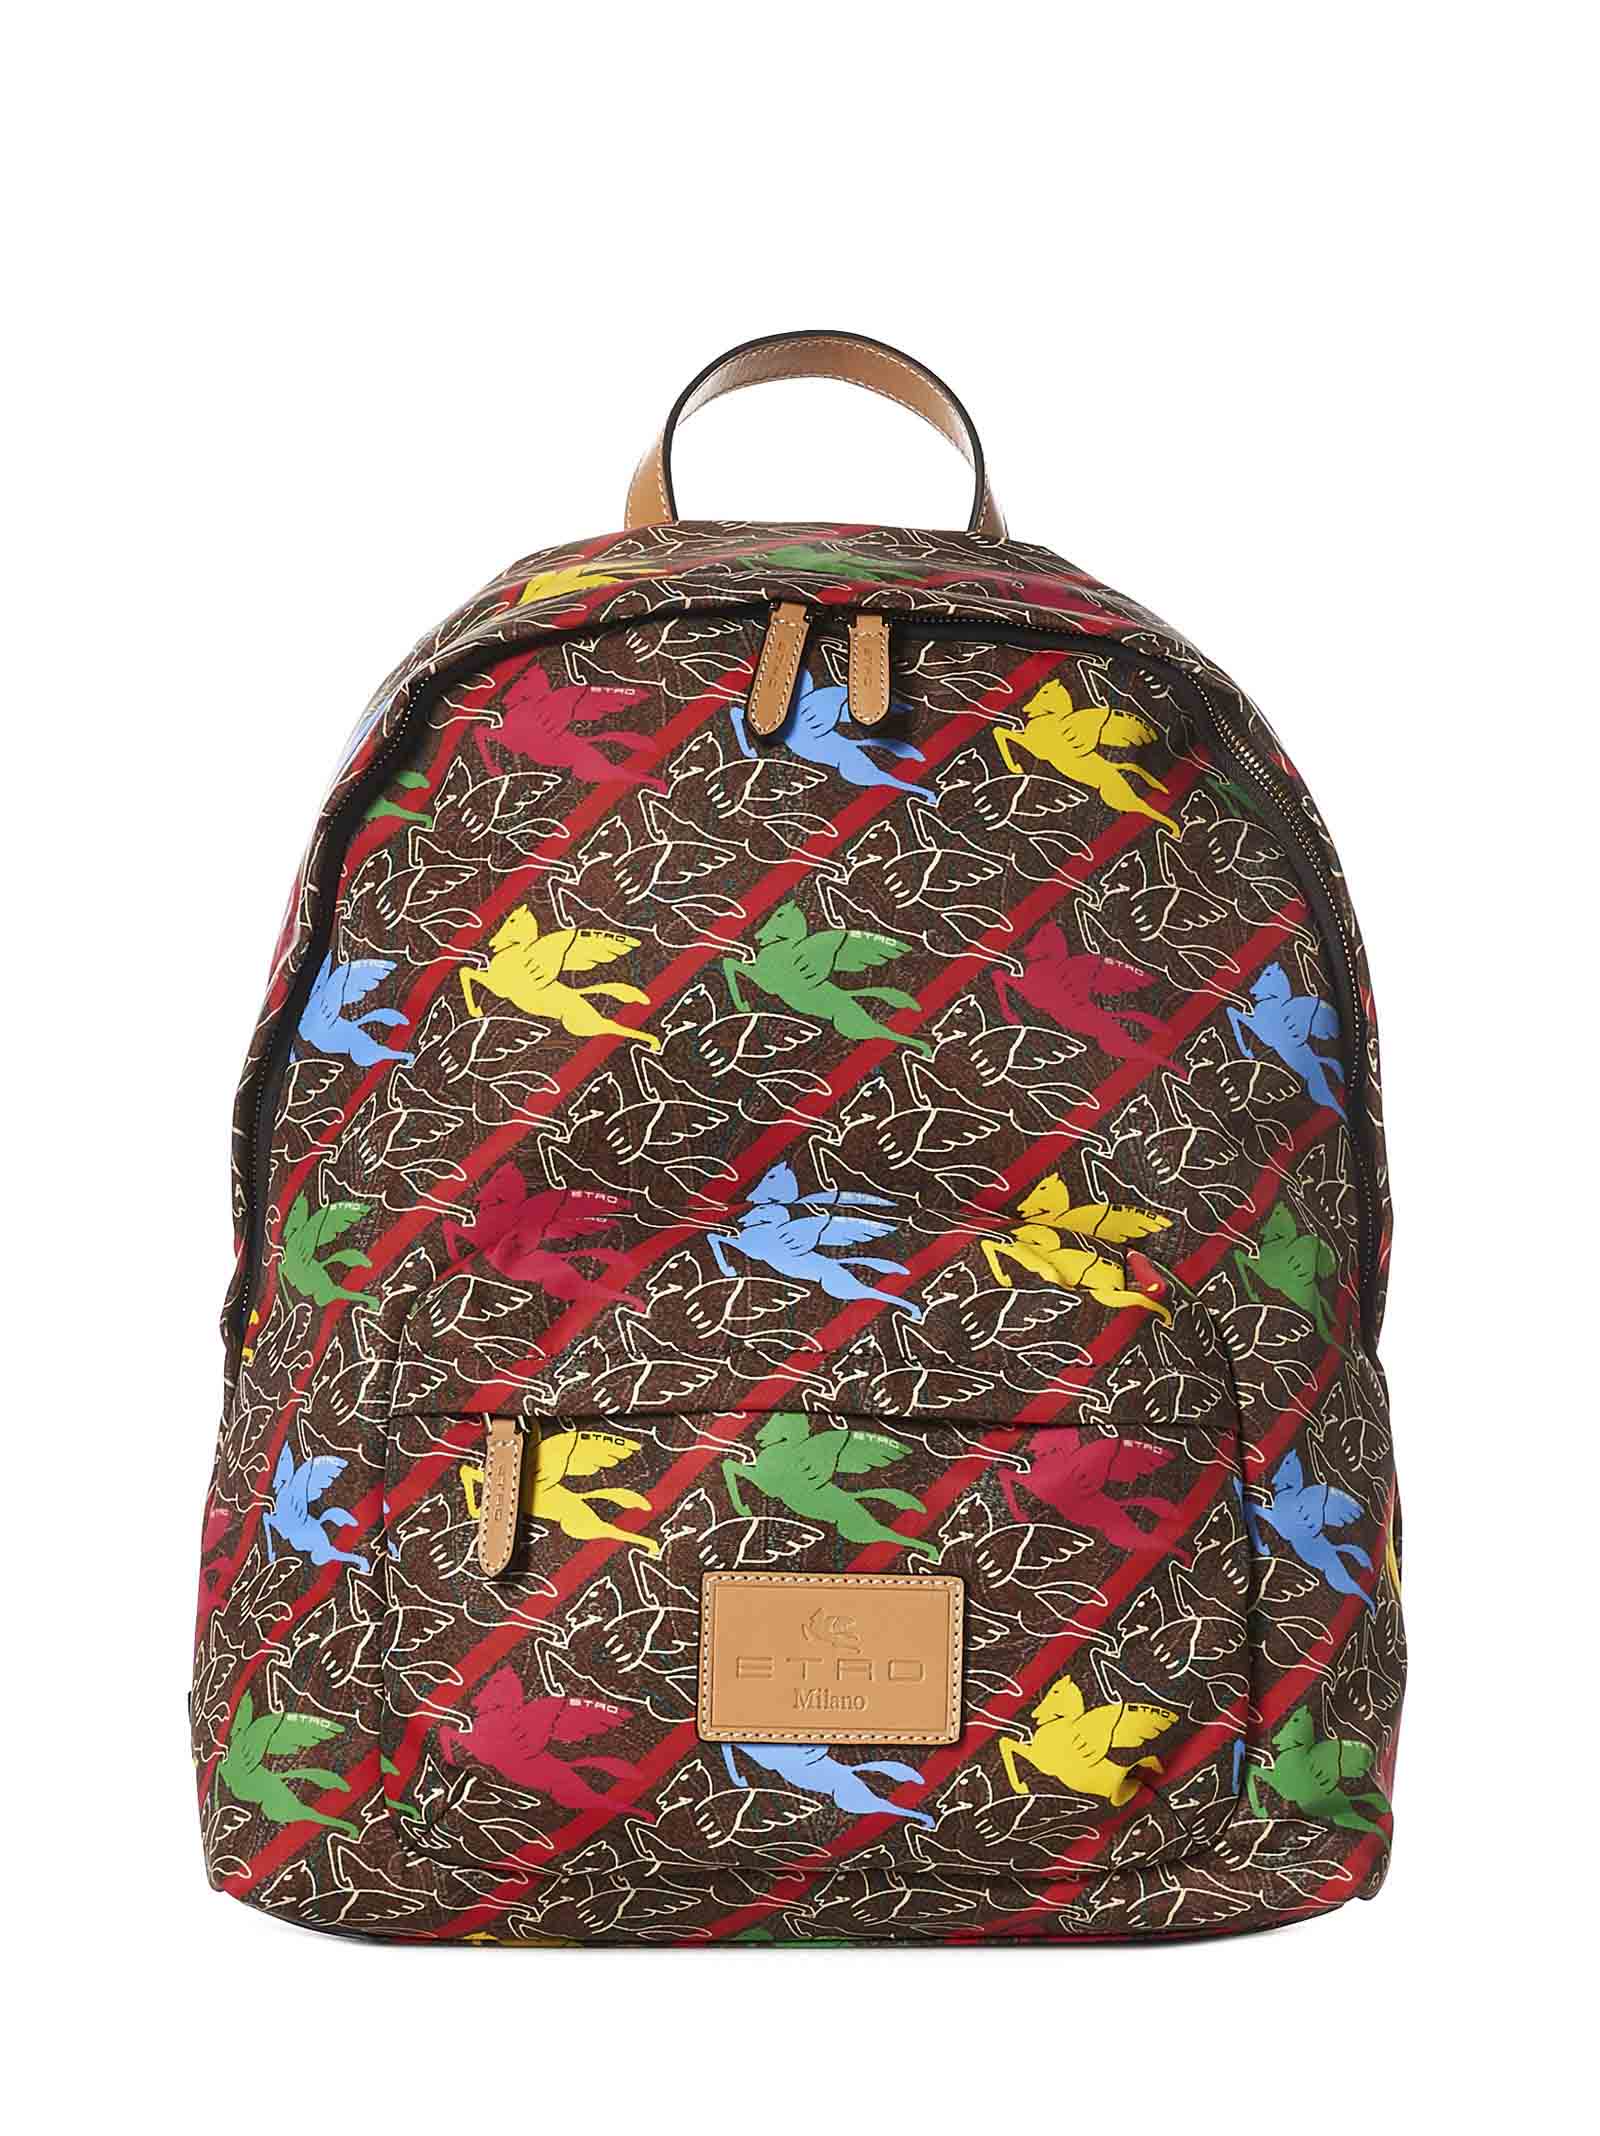 Etro Pegaso Backpack